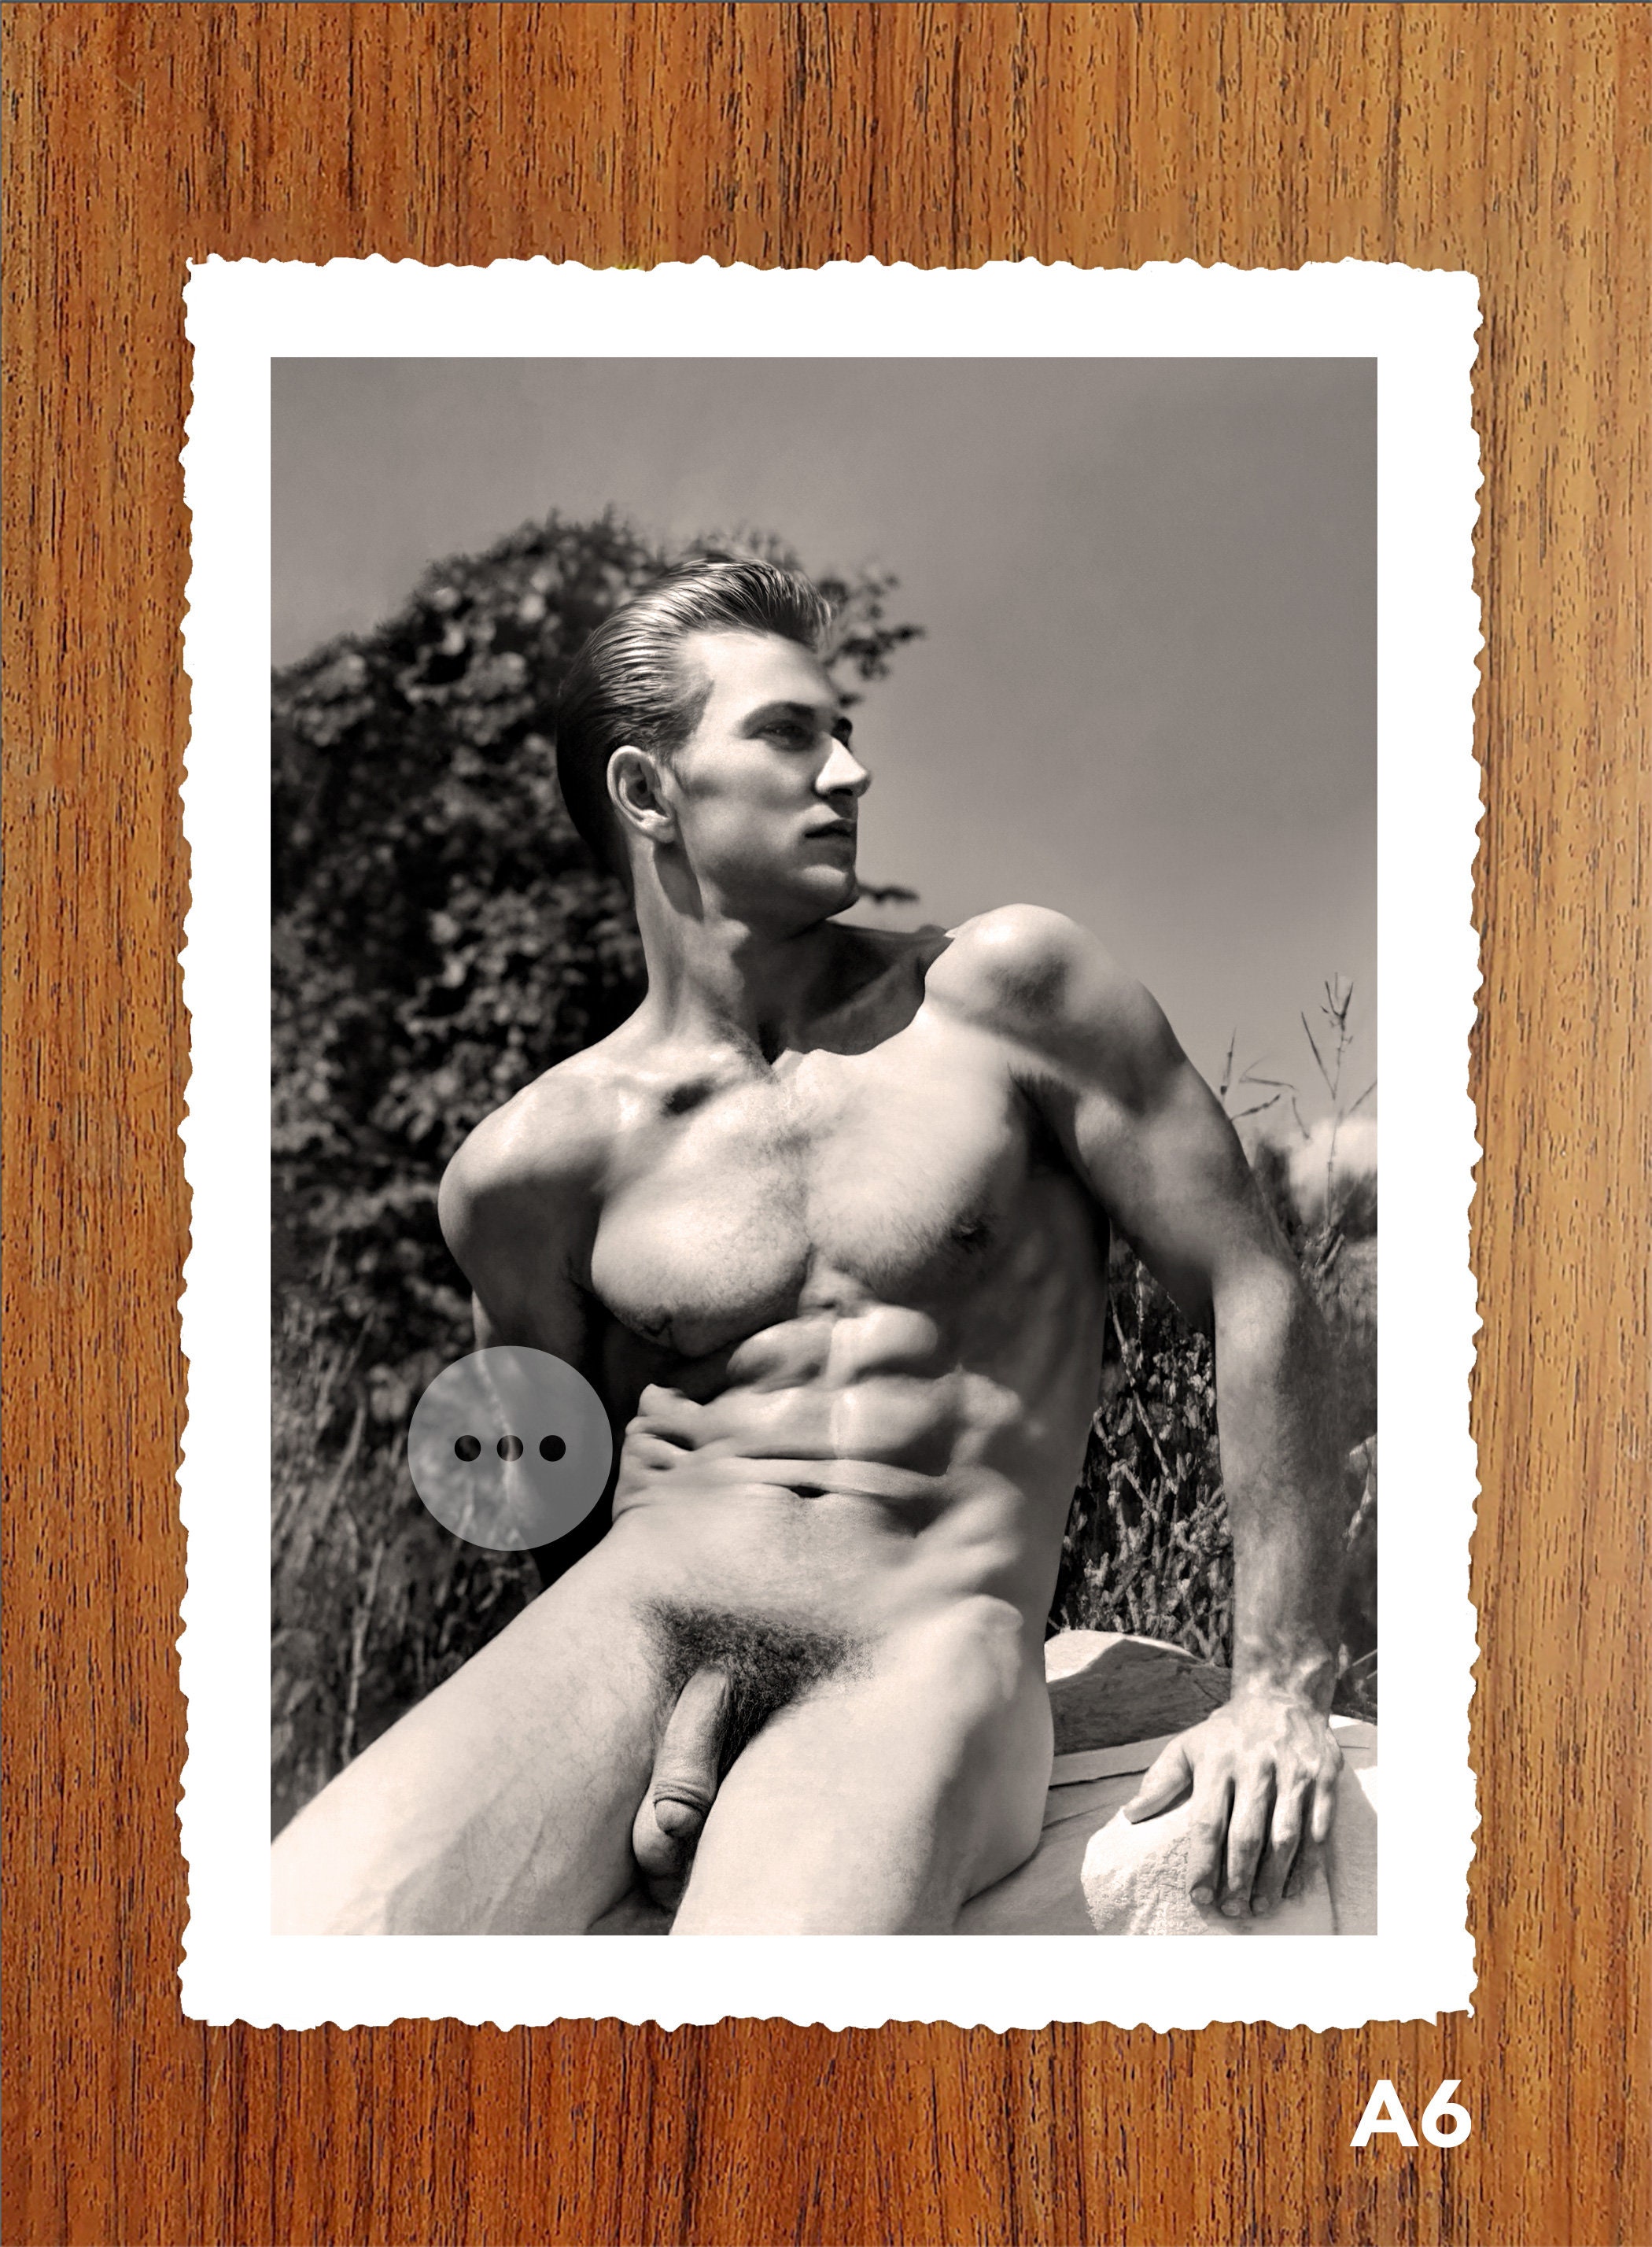 Album de fotos de hombres desnudos